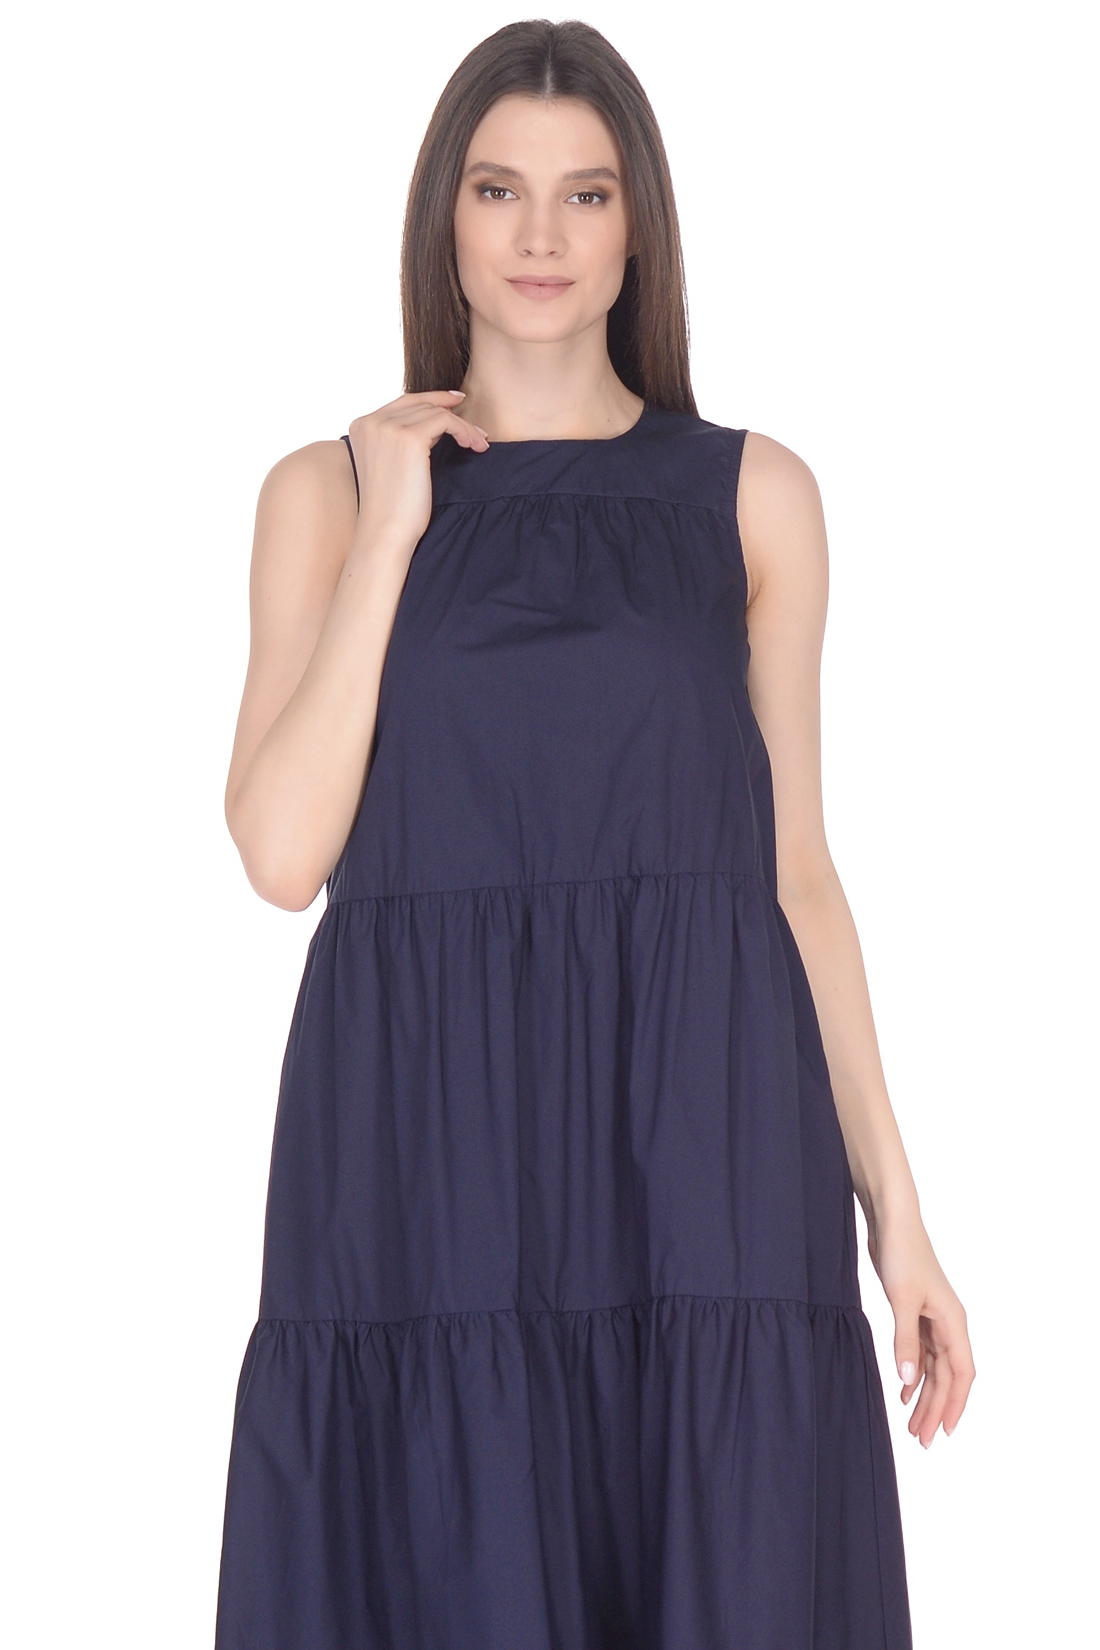 Ярусное платье из хлопка (арт. baon B458062), размер S, цвет синий Ярусное платье из хлопка (арт. baon B458062) - фото 3